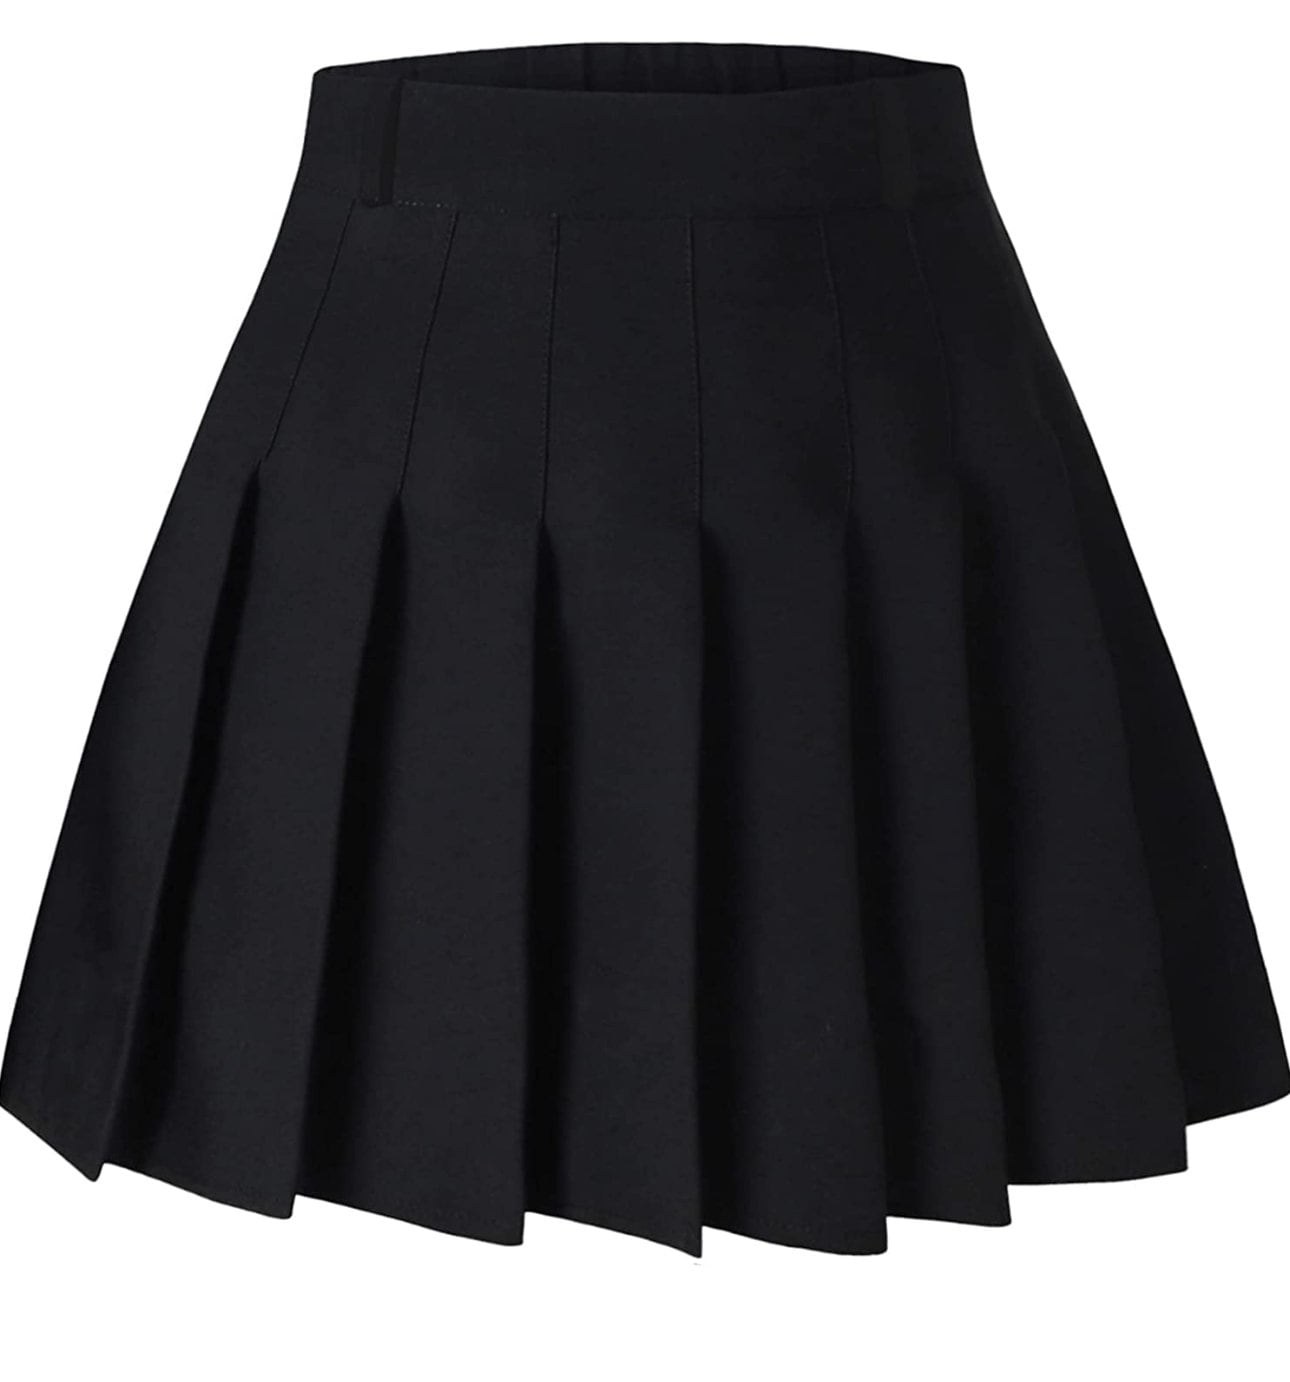 Pleated Skirt, Girls Skirt Set, Birthday Outfit, Custom Skirt, Custom ...